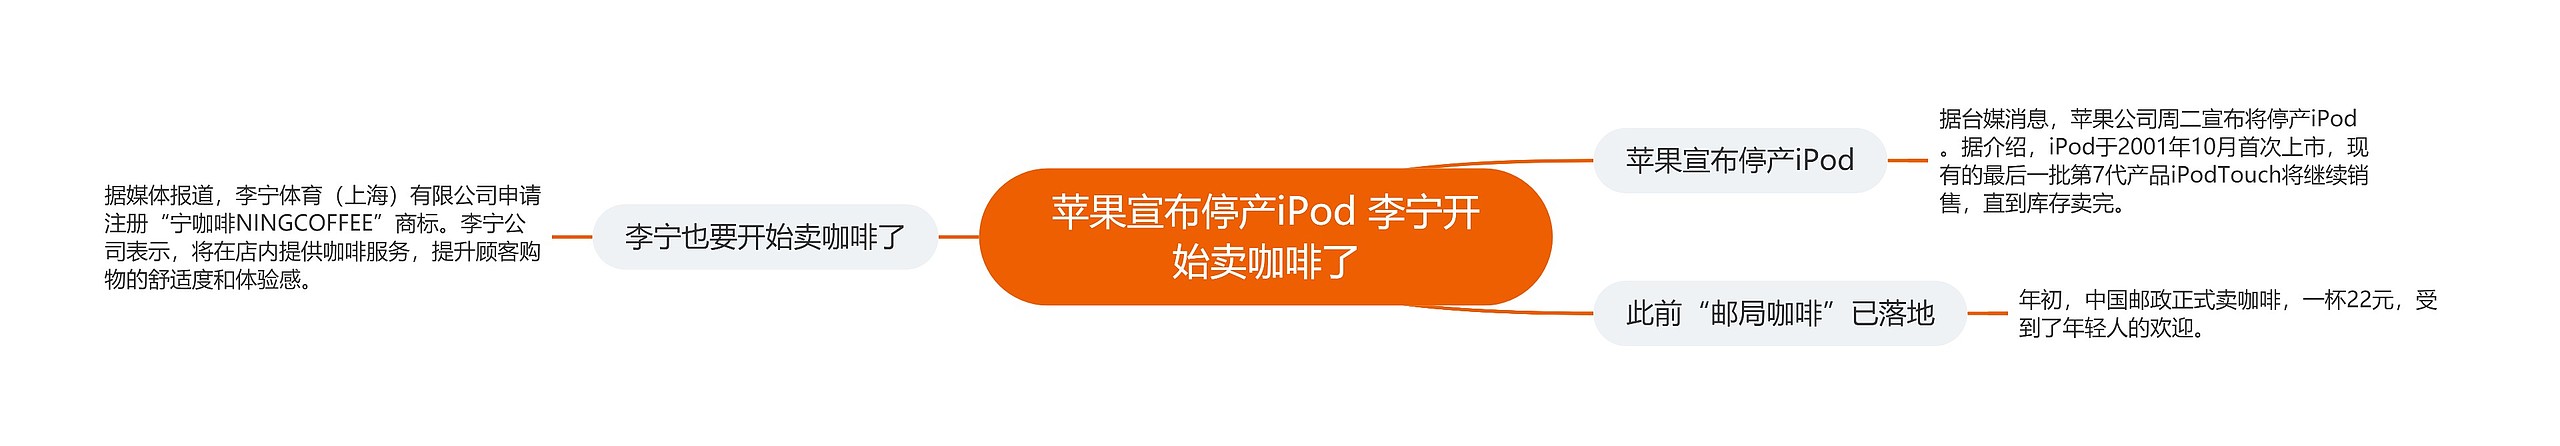 苹果宣布停产iPod 李宁开始卖咖啡了